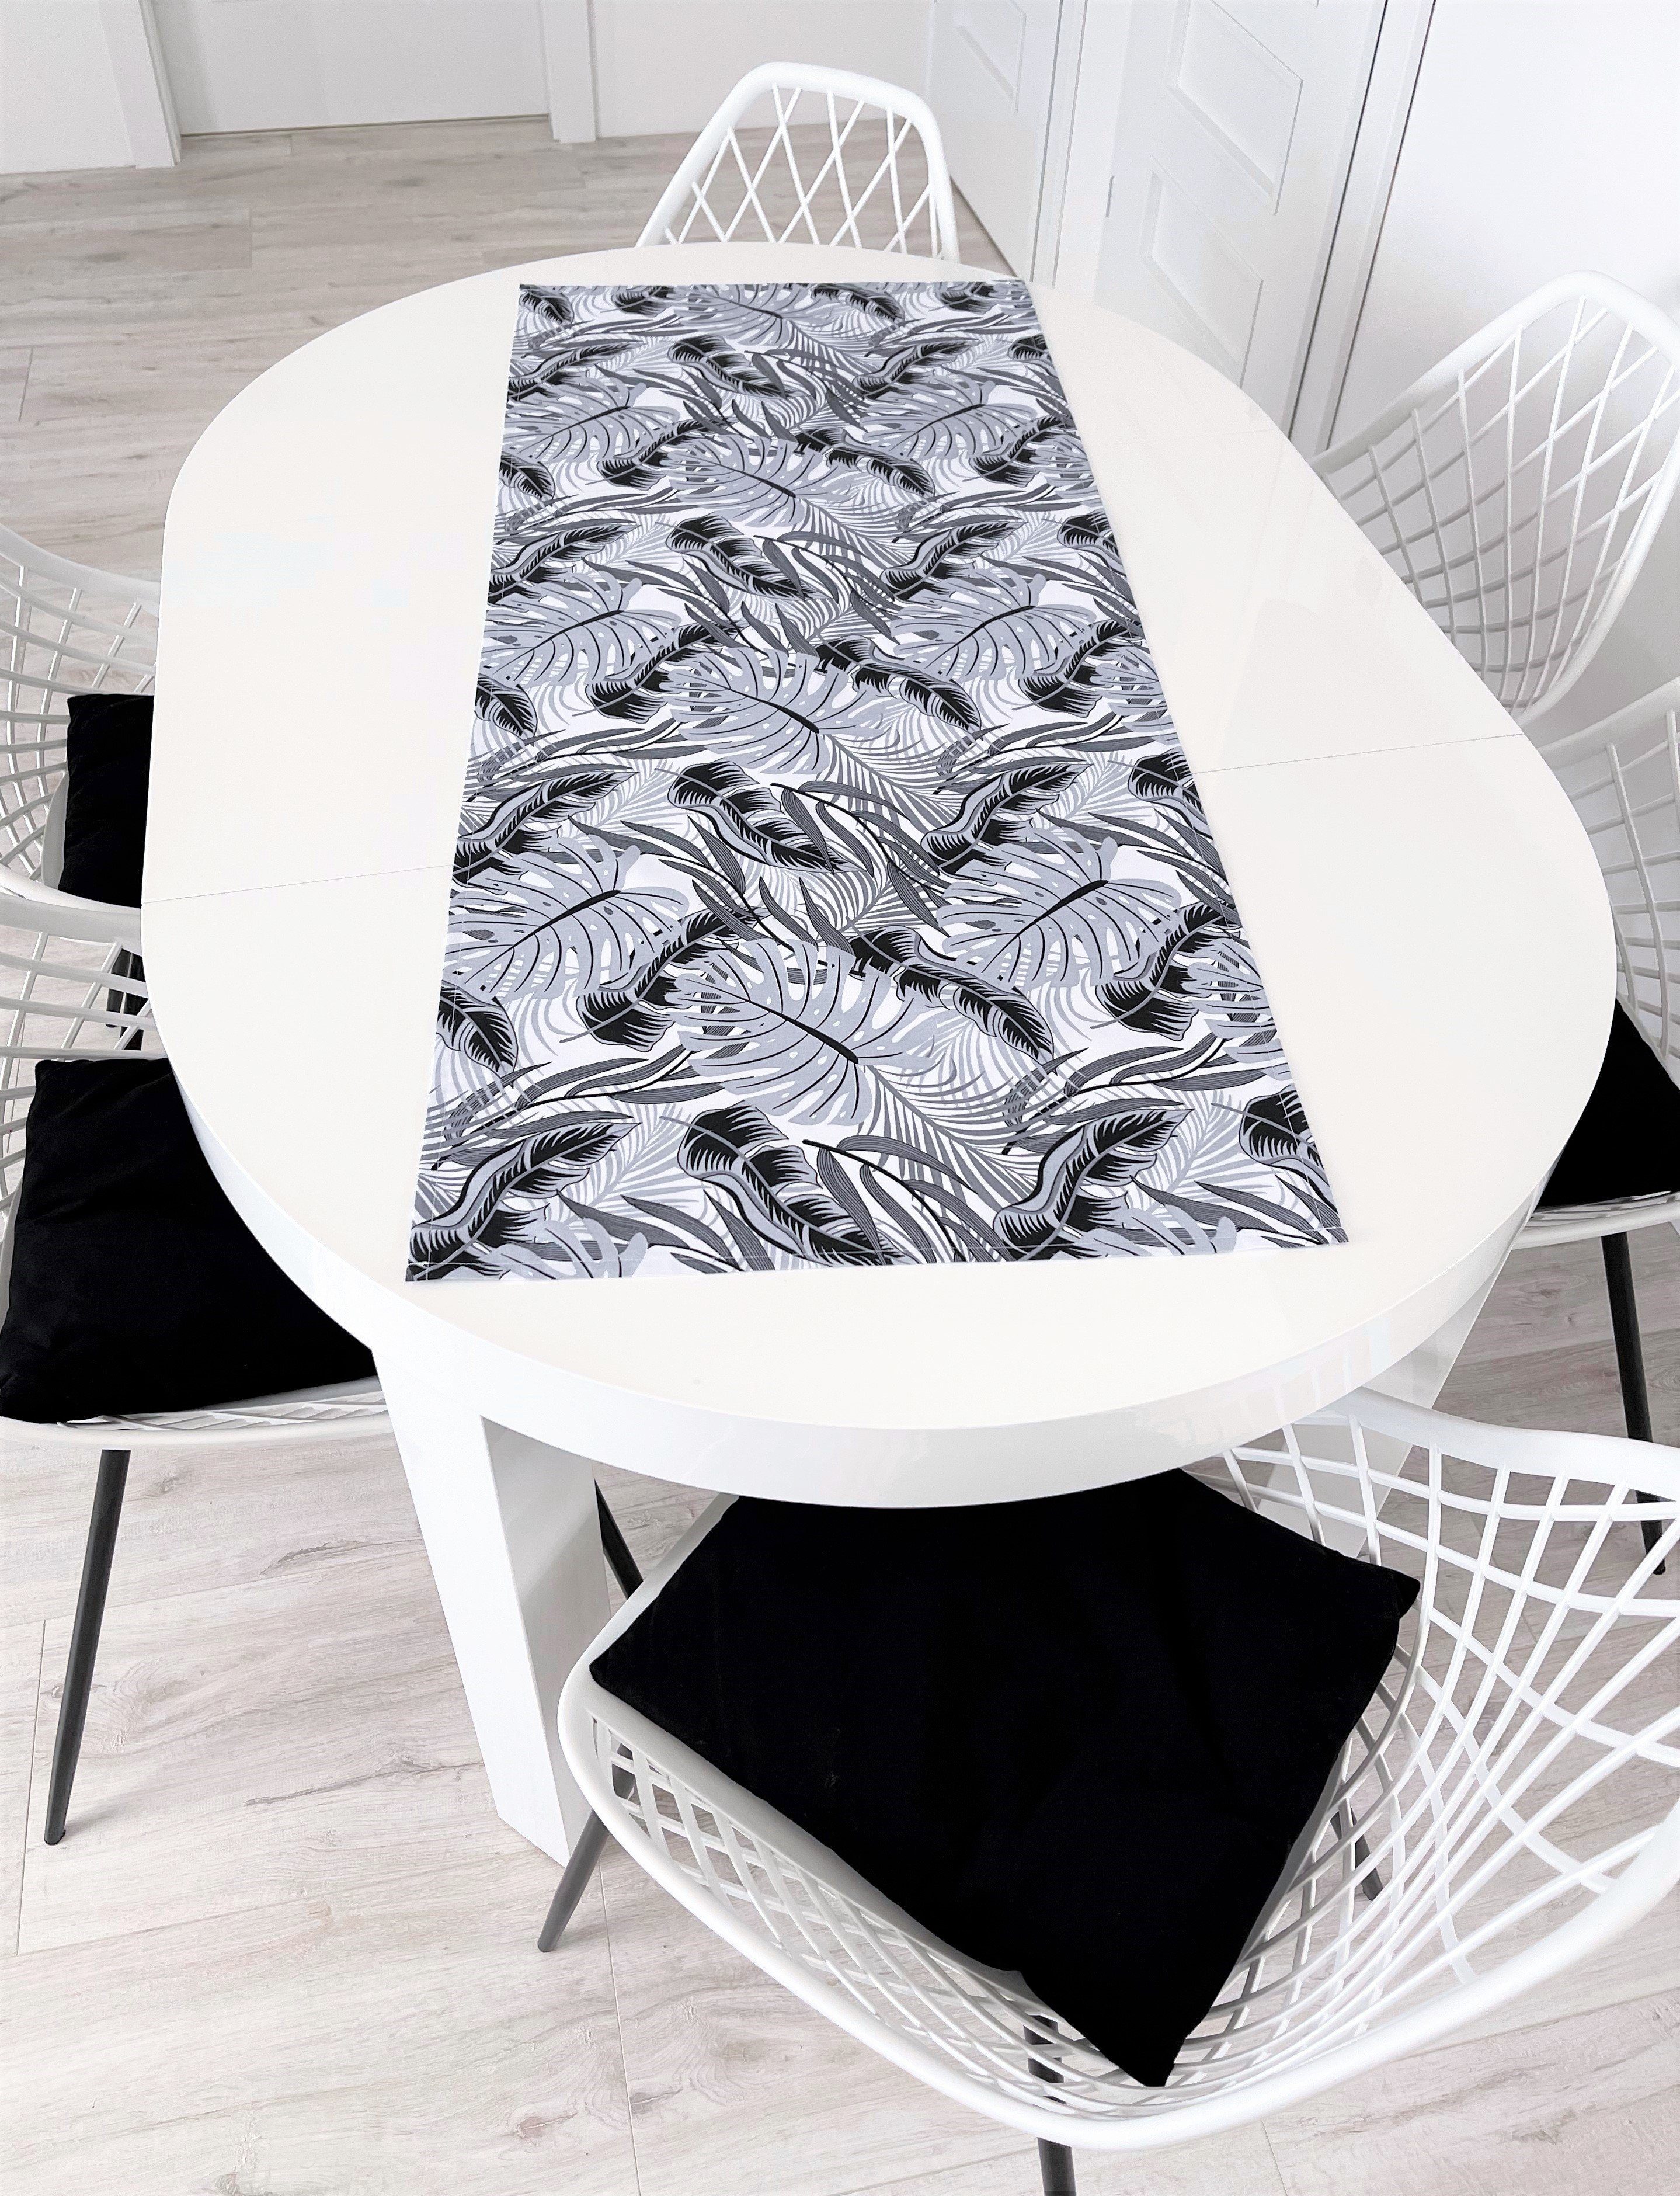 RoKo-Textilien Tischläufer Tischläufer Tischdecke Tischlaeufer 100%  Baumwolle gedeckter Tisch in 18 Maßen verfügbar, Farben: Weiß, Grau, Schwarz | Mitteldecken